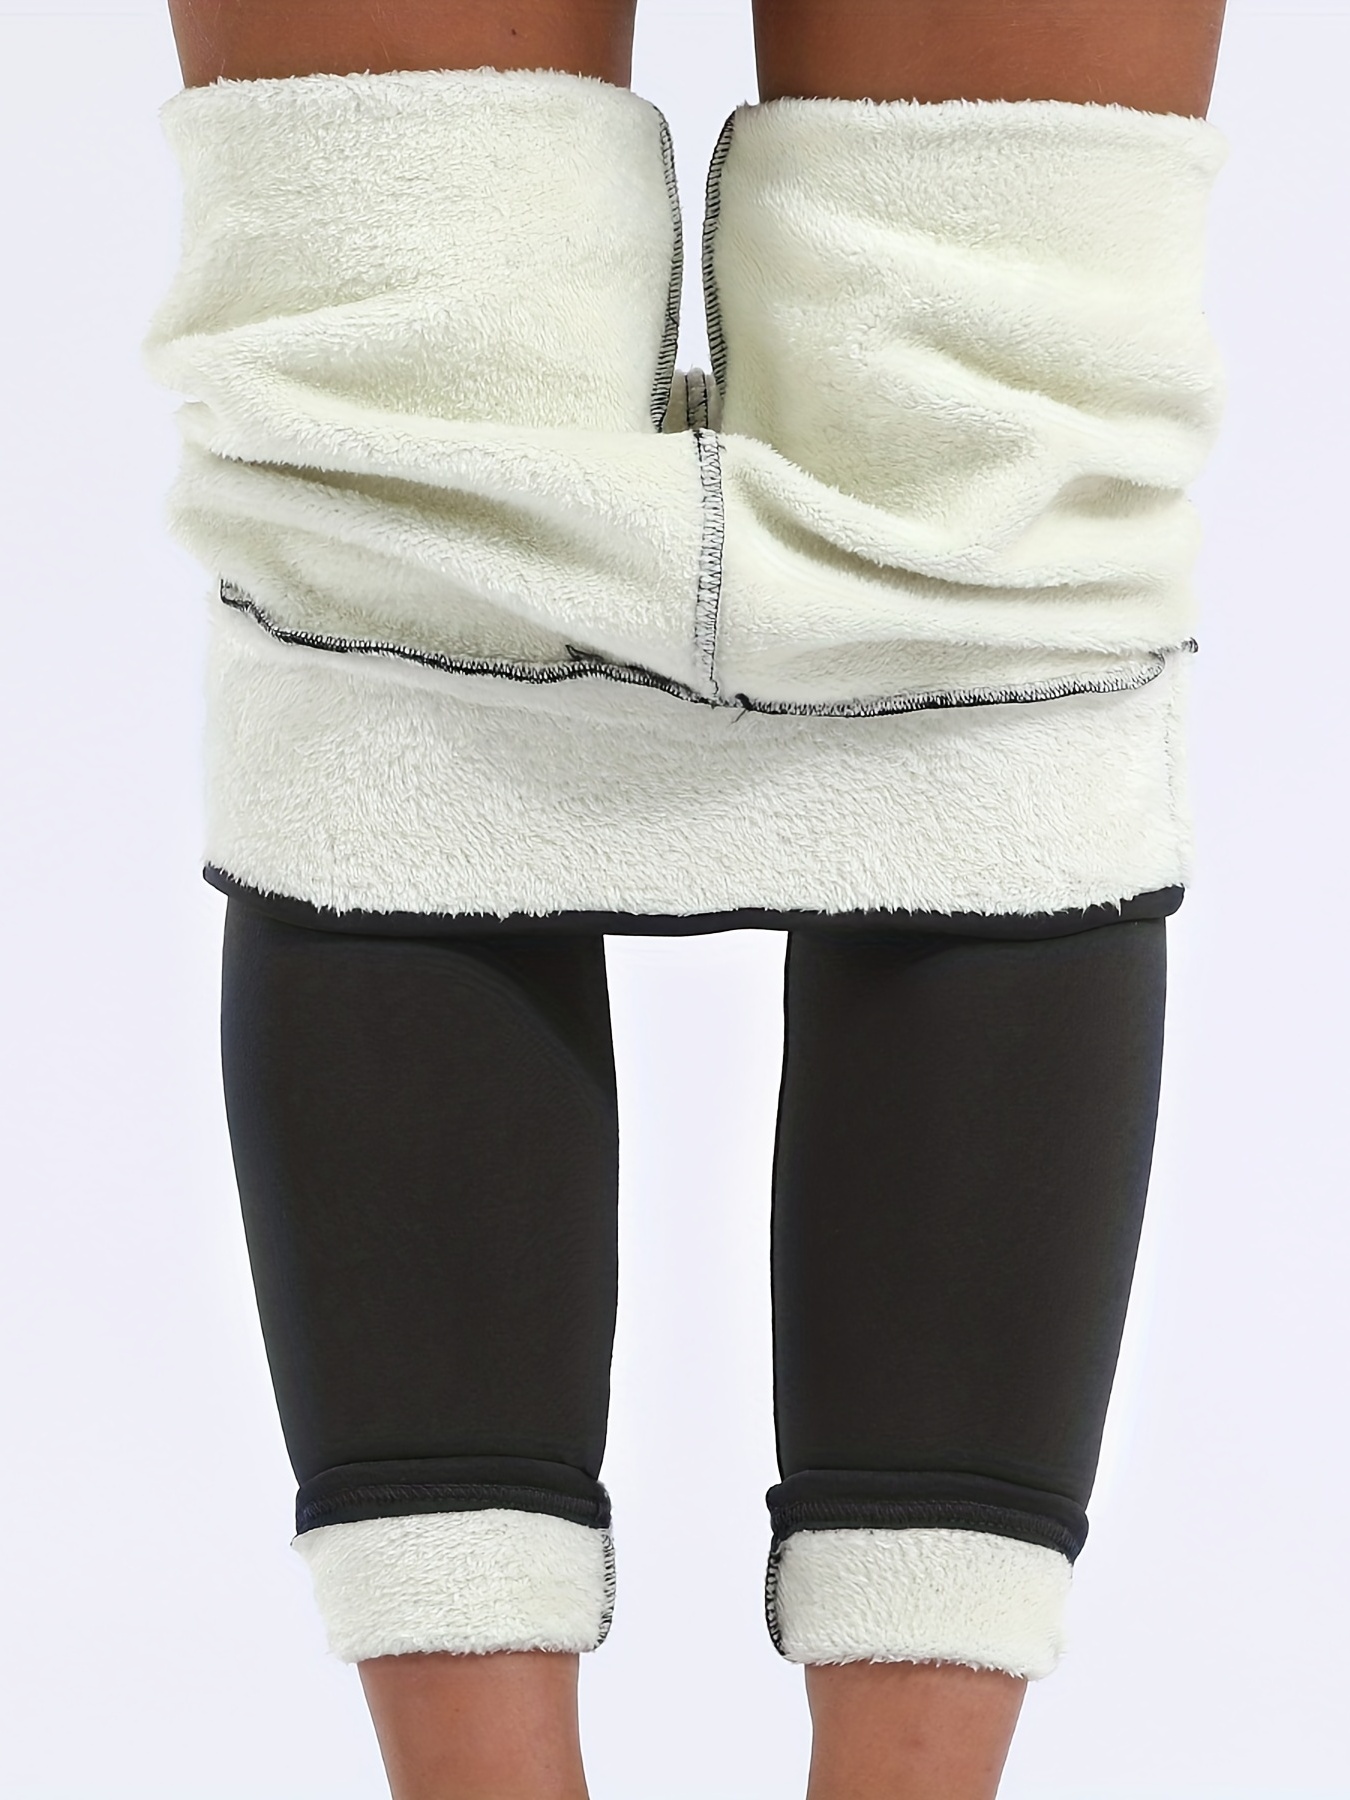 CHRLEISURE Velvet Warm Pant Women Winter Leggings Hight Waist